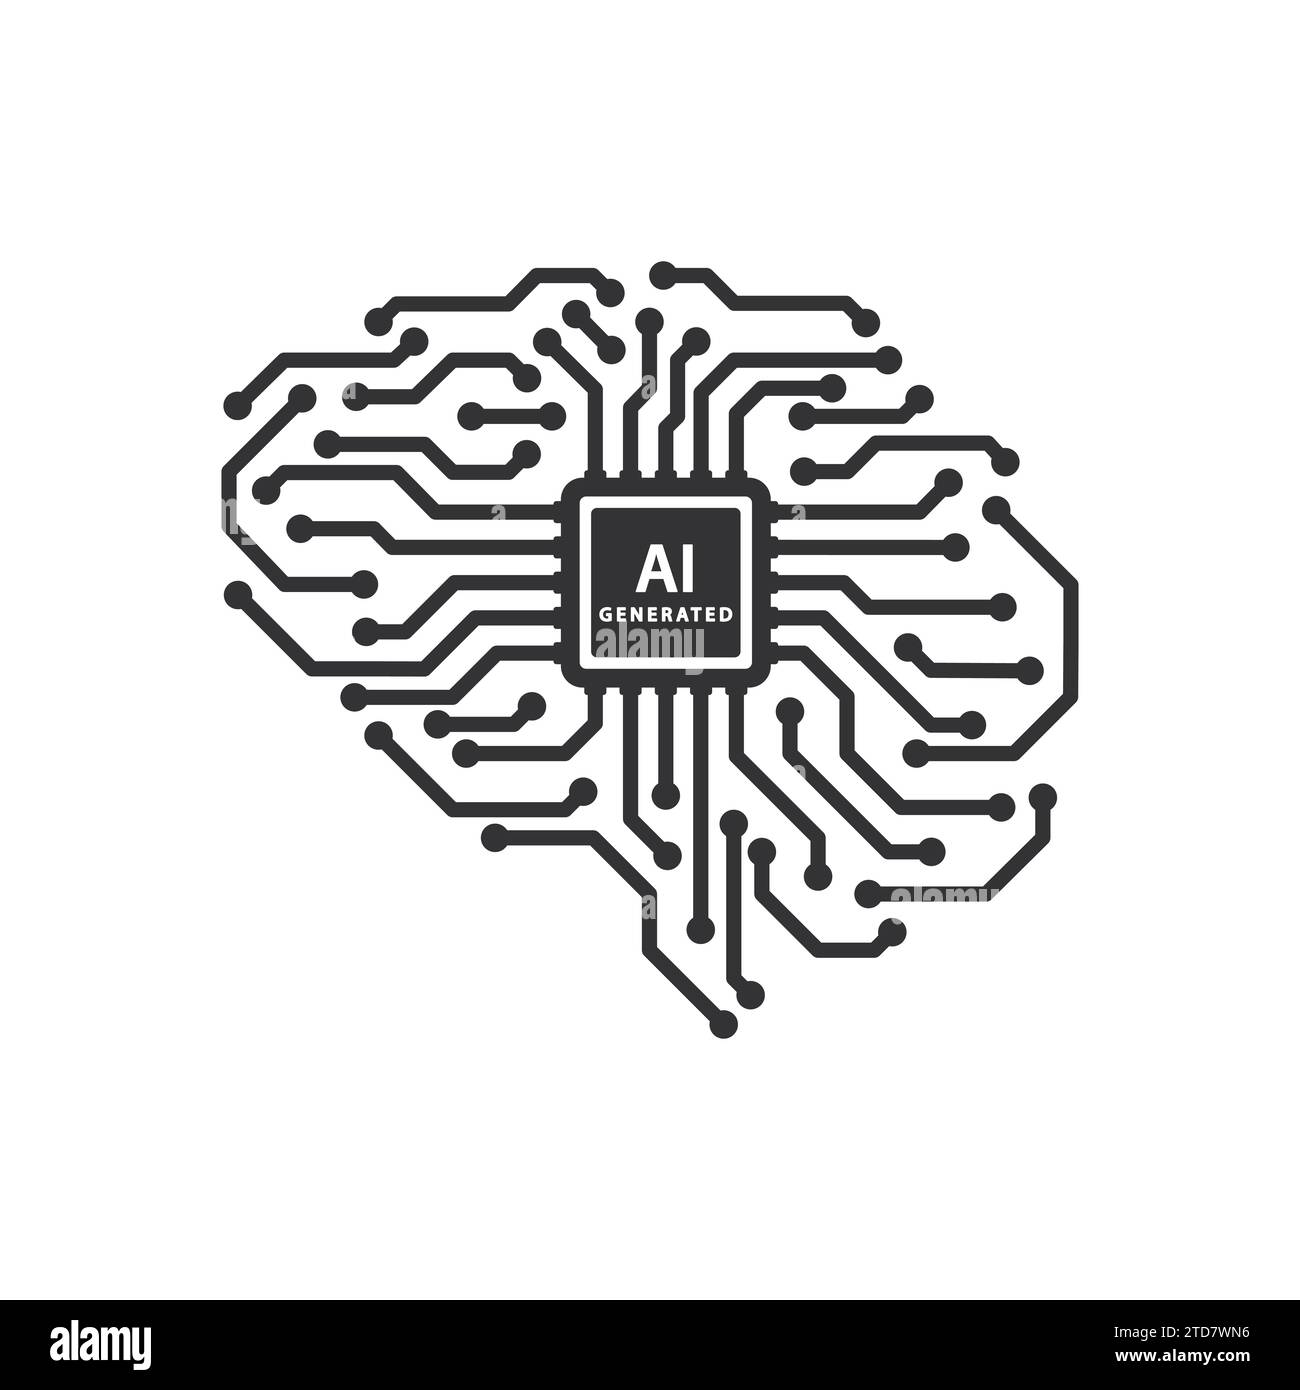 Cerebro Humano analizado con lupa electrónica dentro de la inteligencia  artificial del circuito aislado en blanco Fotografía de stock - Alamy